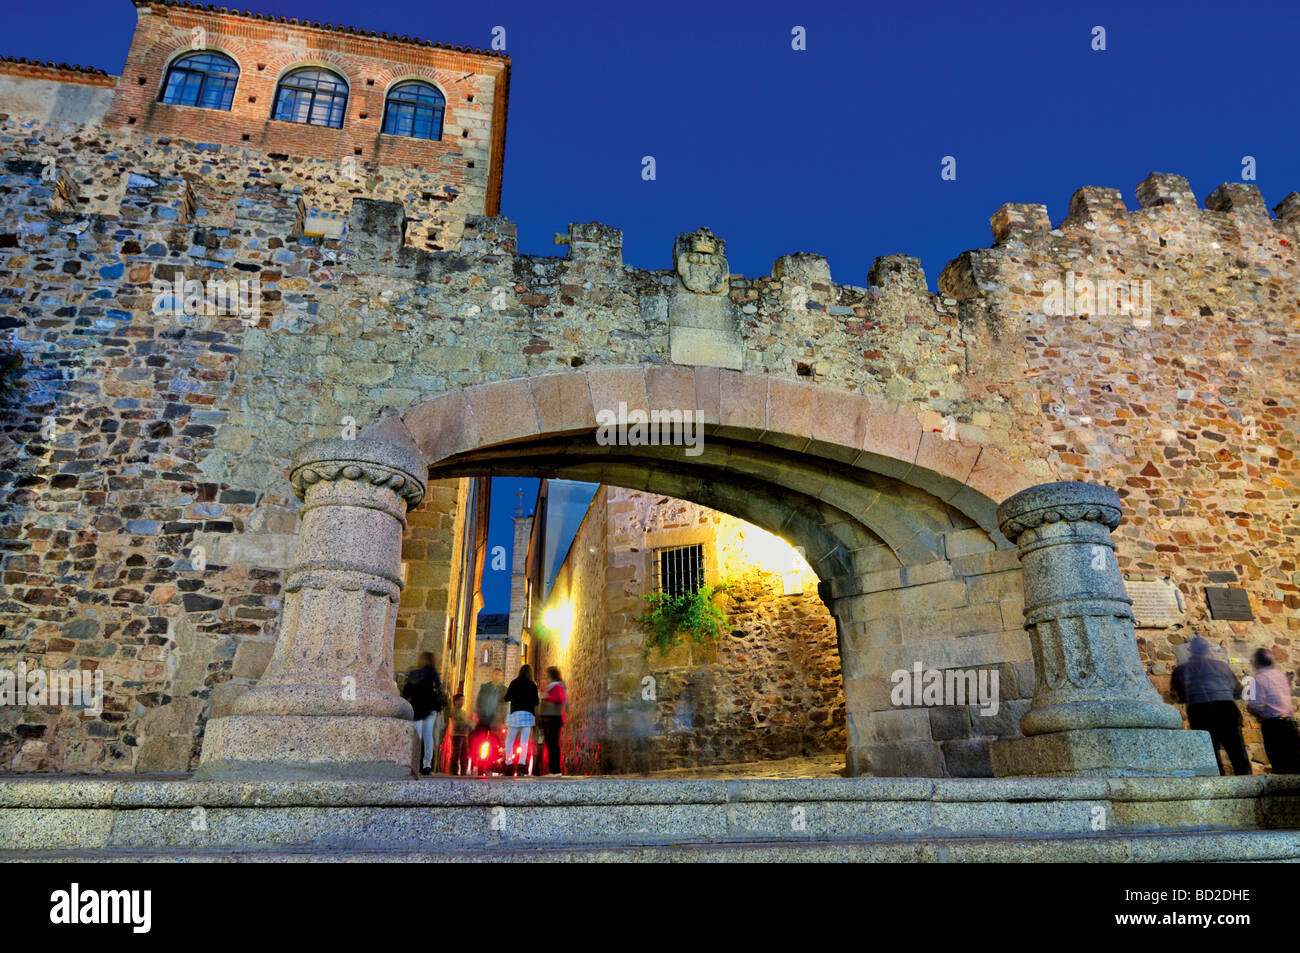 Spain, Cáceres: Arco de la Estrella by night Stock Photo